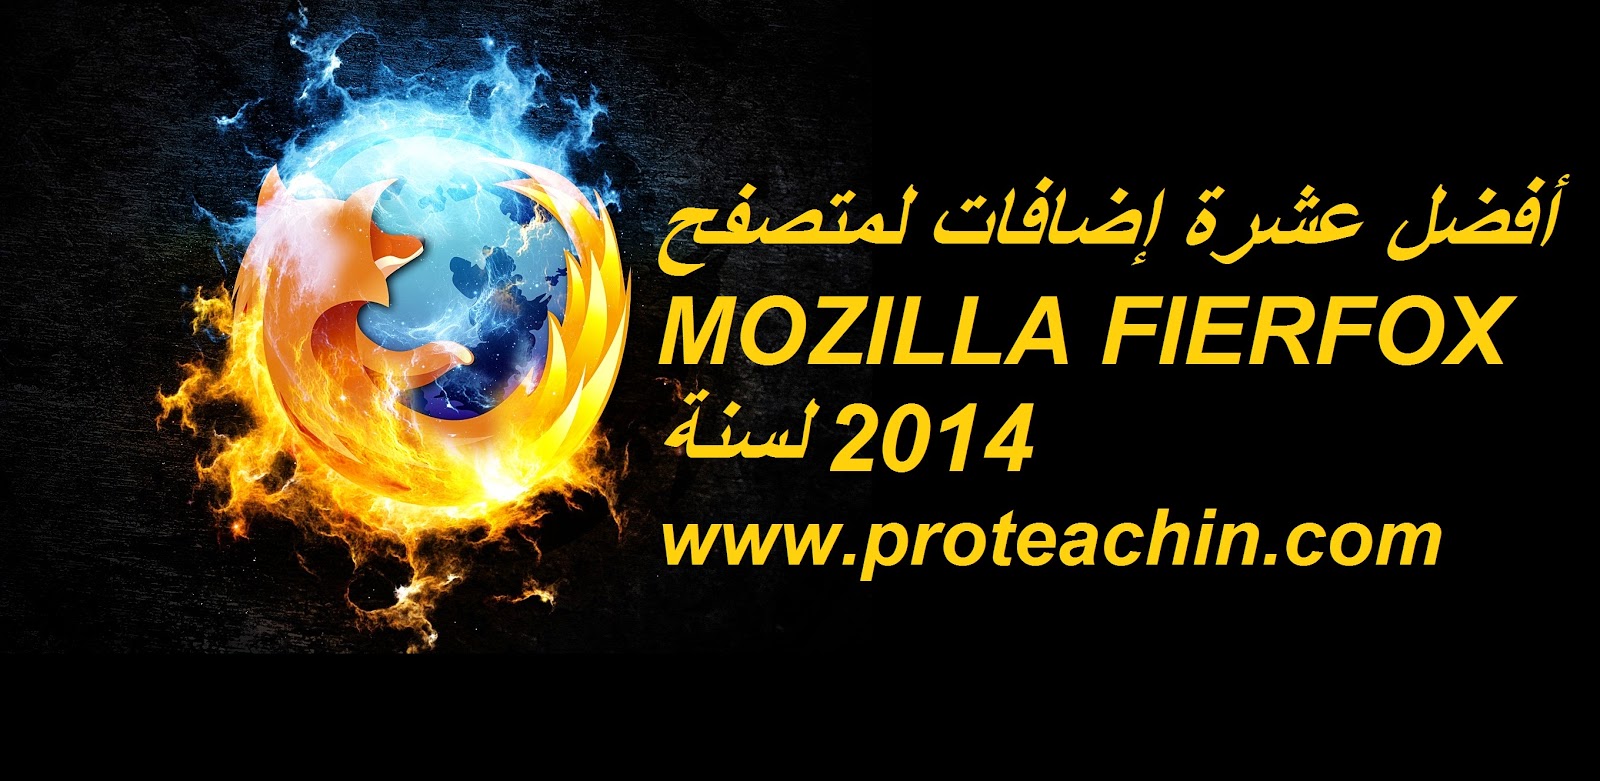 استعمل أفضل عشر إضافات لمتصفح MOZILLA FIERFOX لسنة 2014 